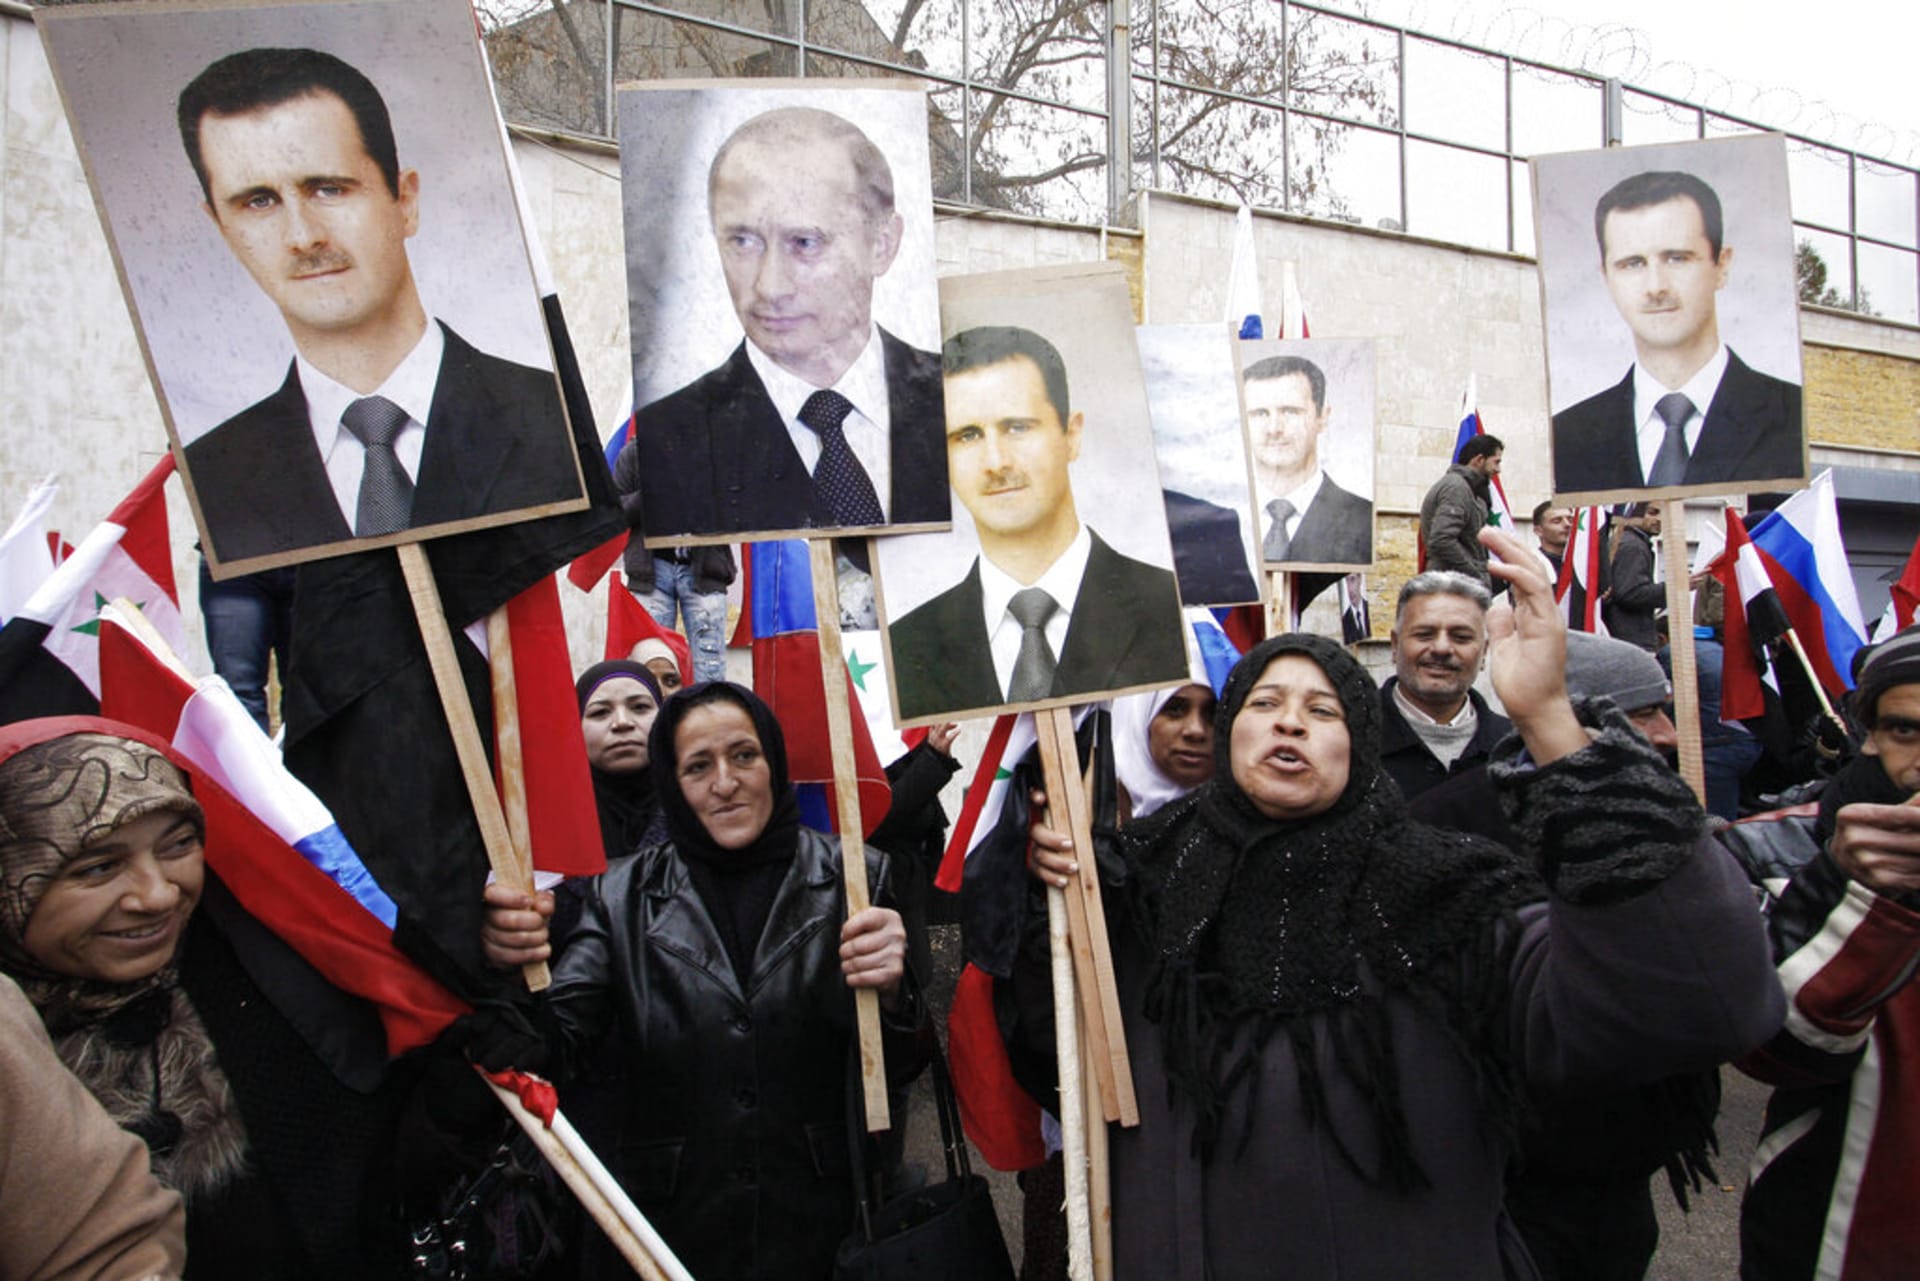 Vladimír Putin a Bašar Asad - obrazové setkání diktátorů